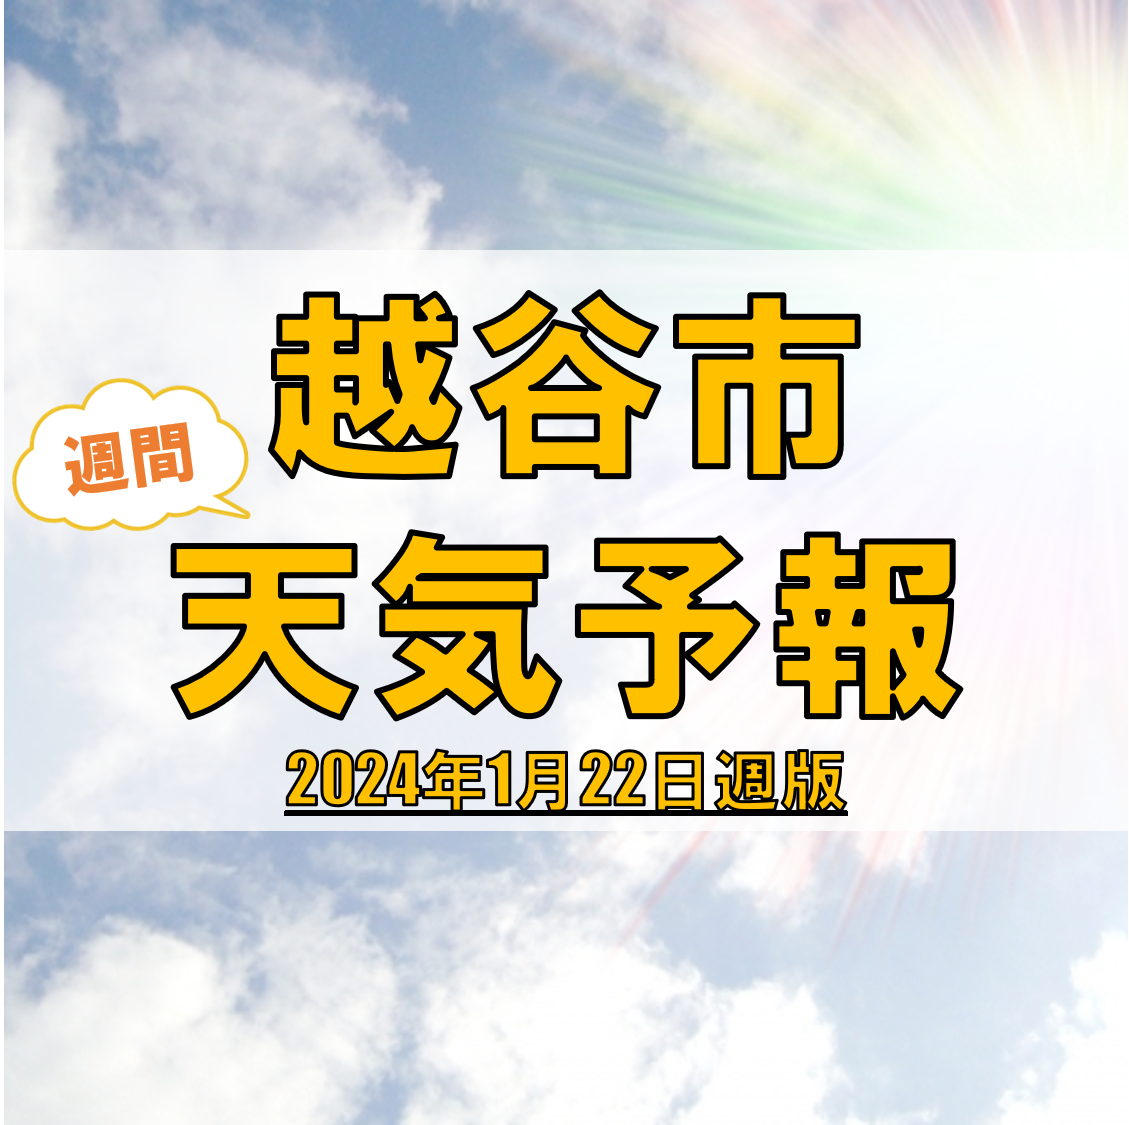 越谷市の天気 週間予報【2024年1月22日週】